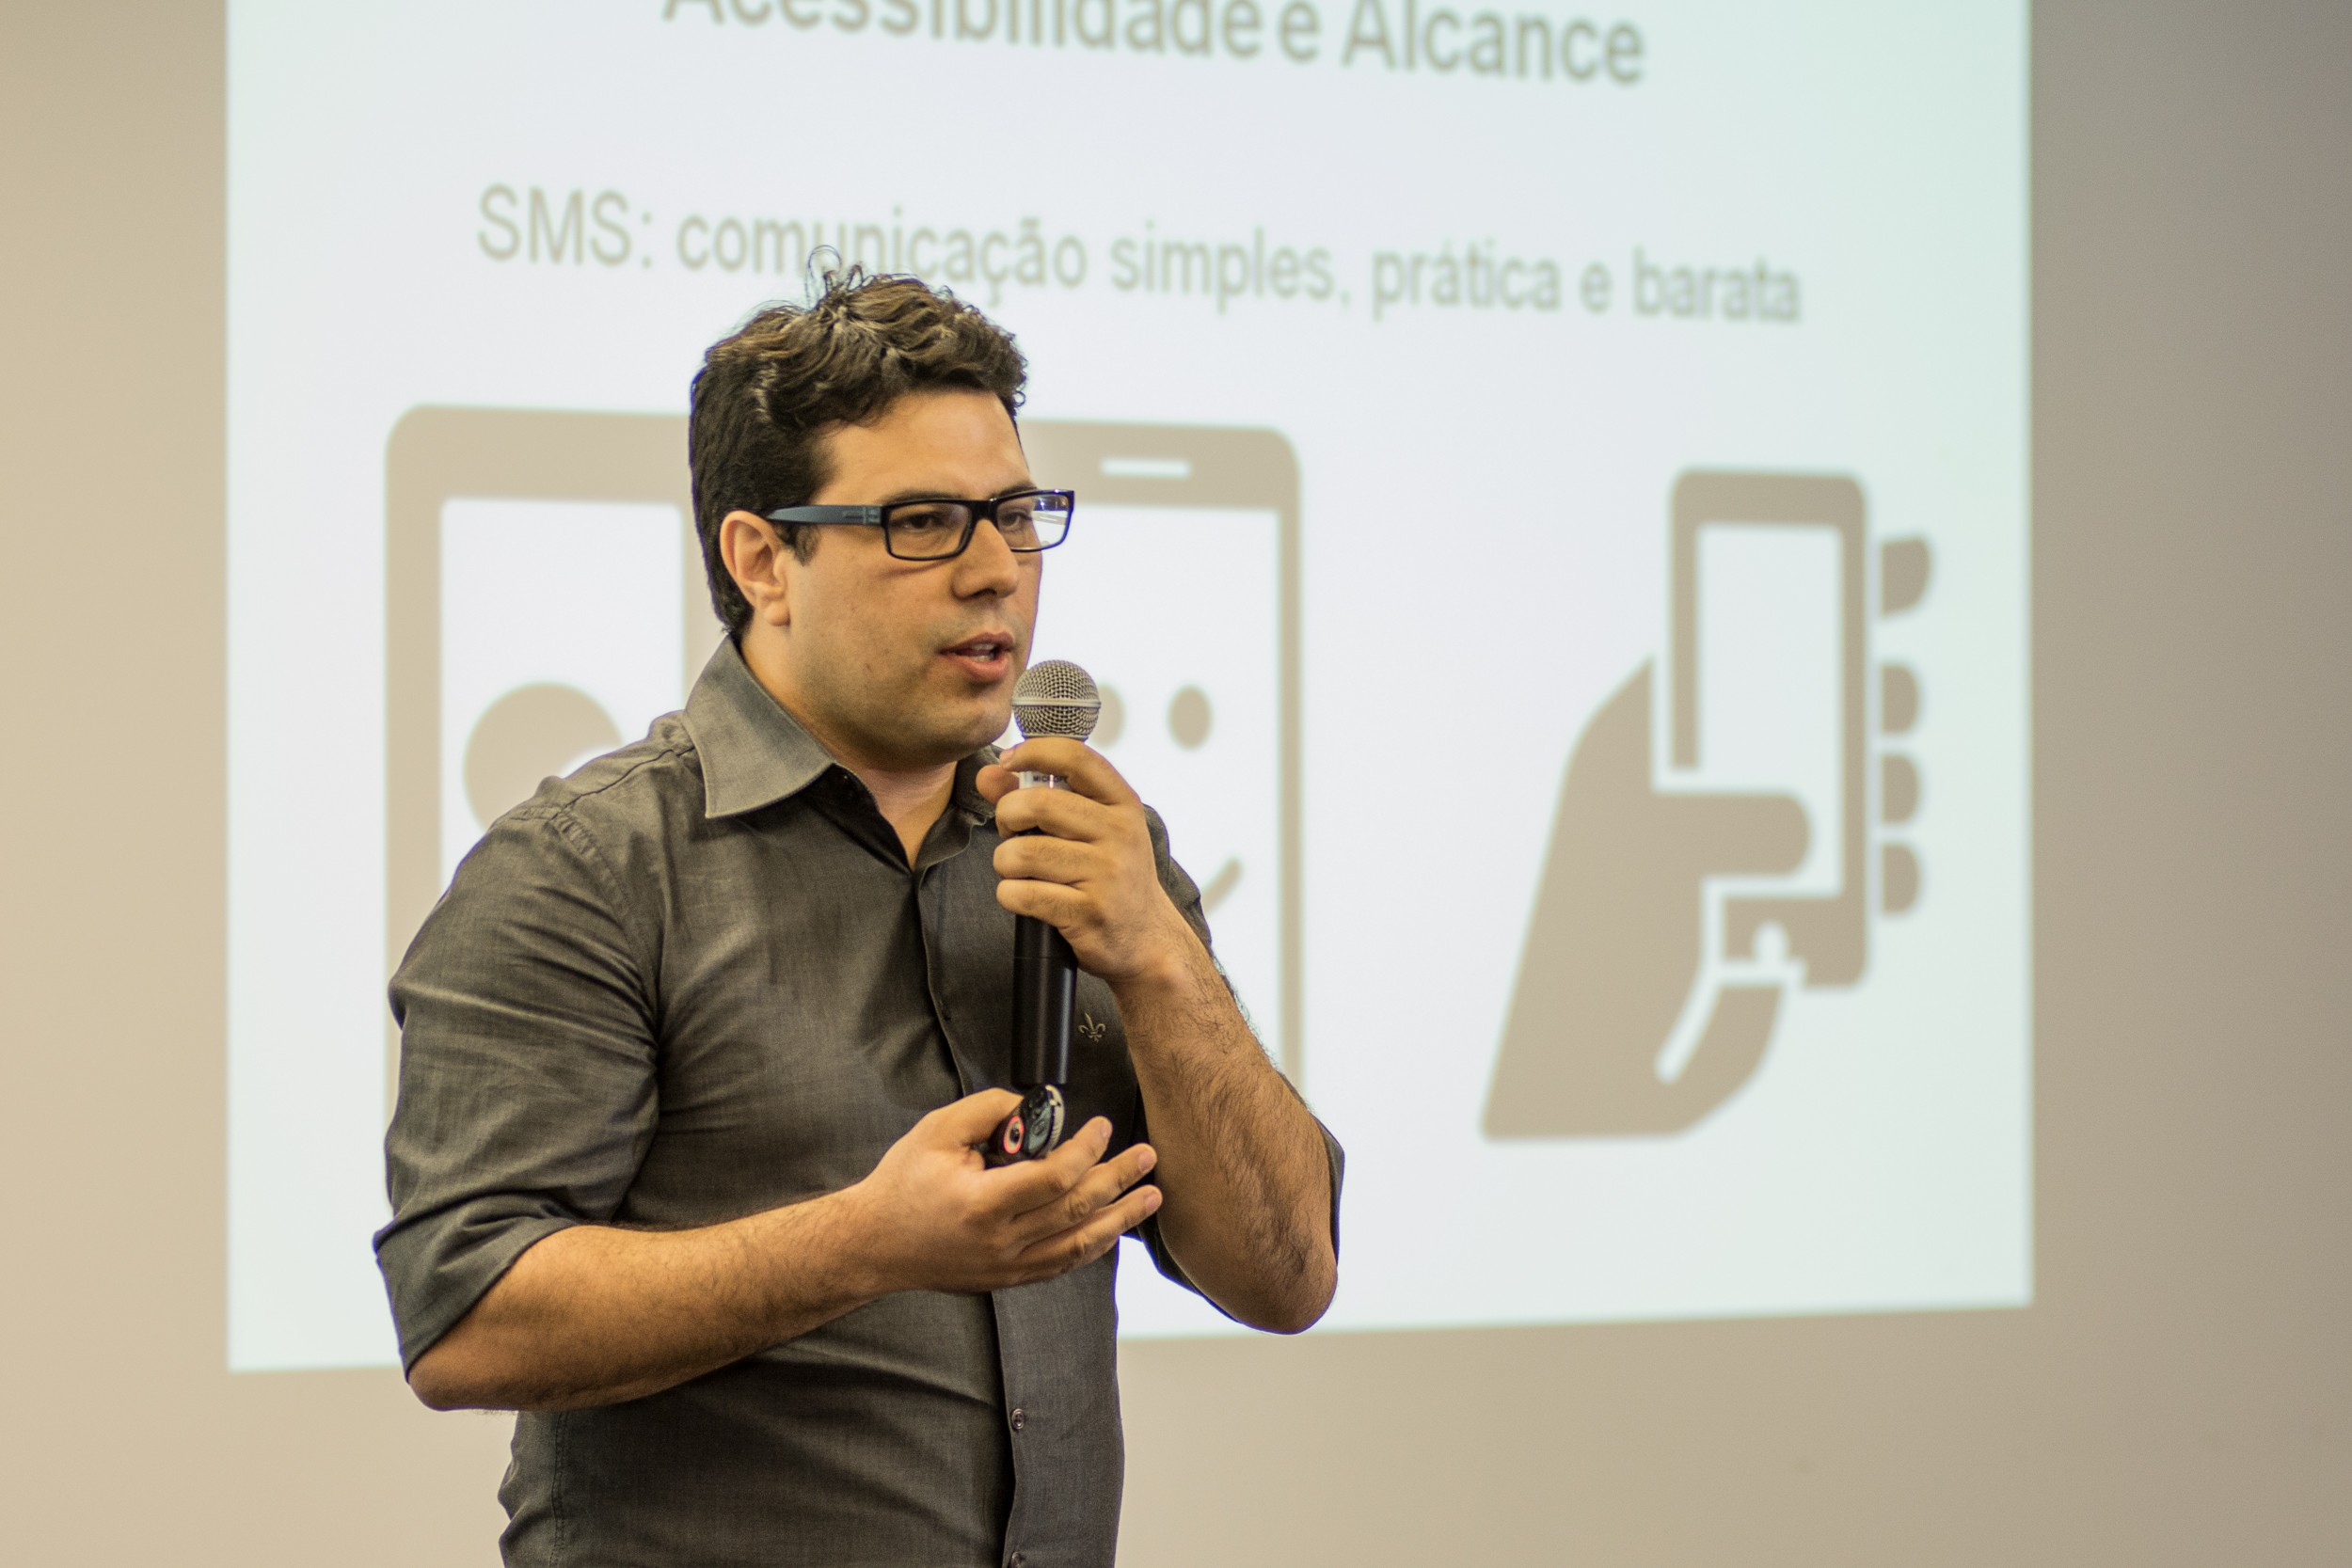 Leonardo Aguiar quer dar voz a doenças silenciosas através de SMS (Foto: Divulgação)